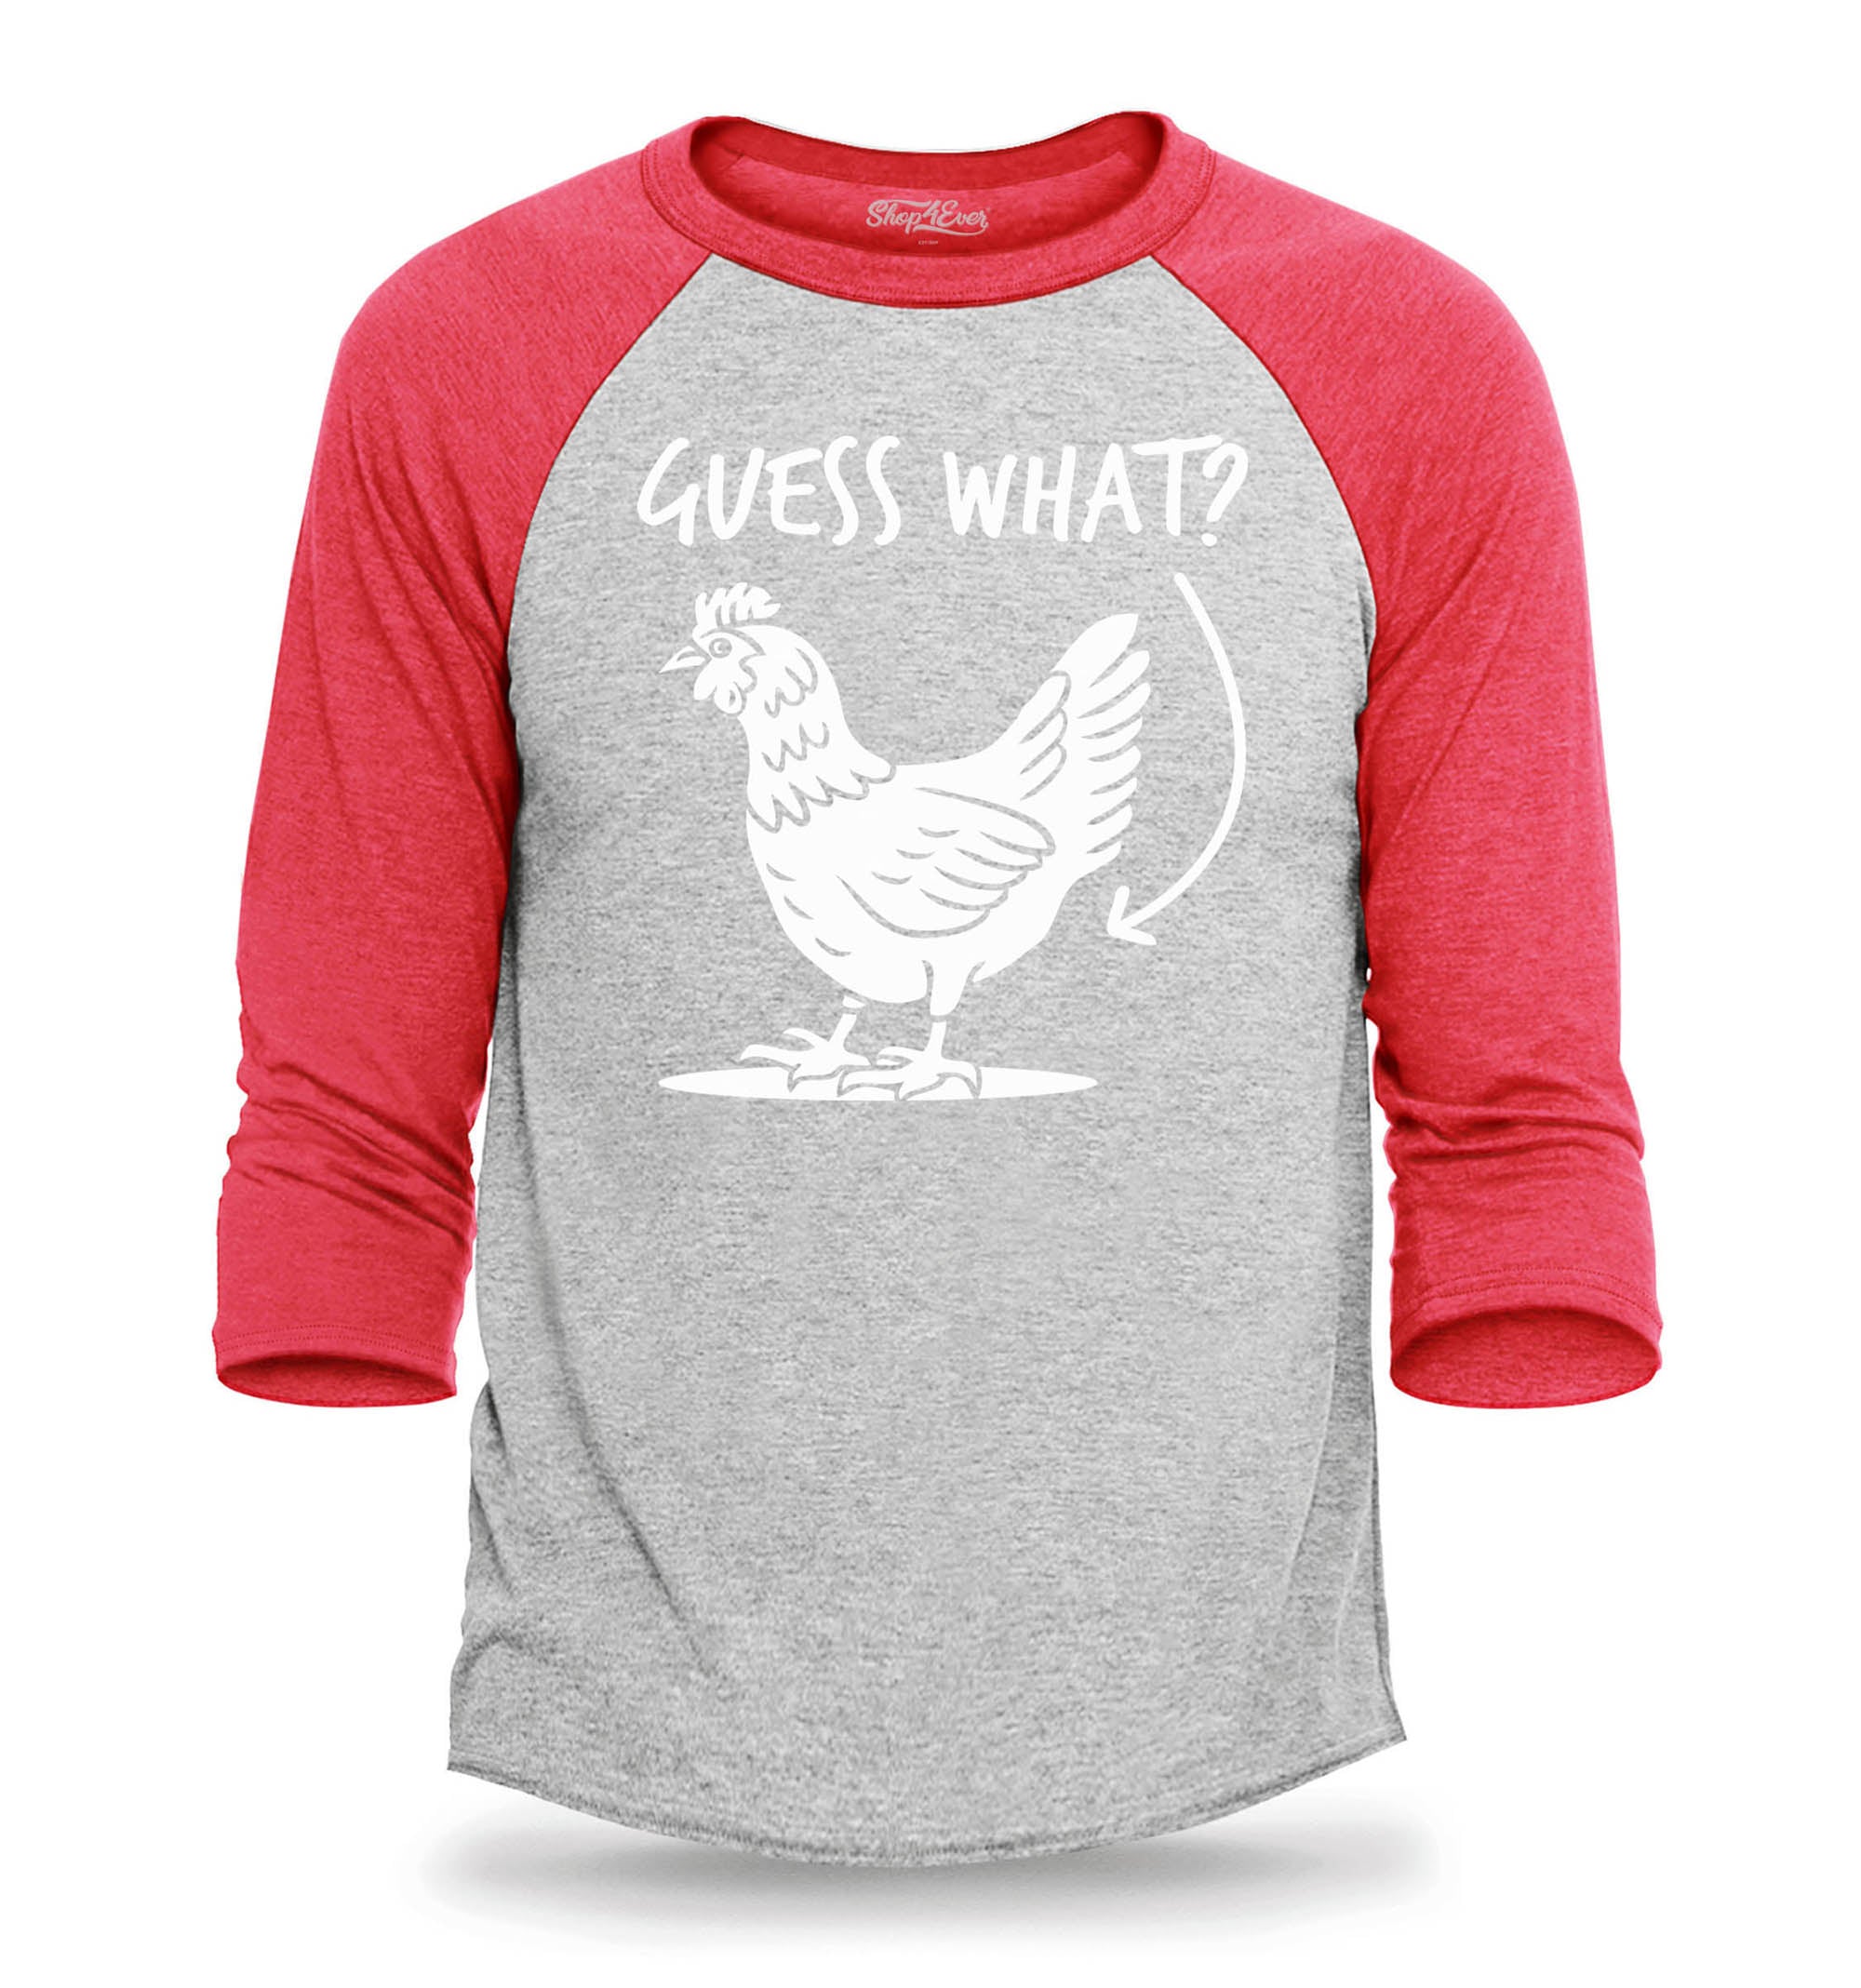 Guess What? Chicken Butt Funny Jokes Raglan Baseball Shirt